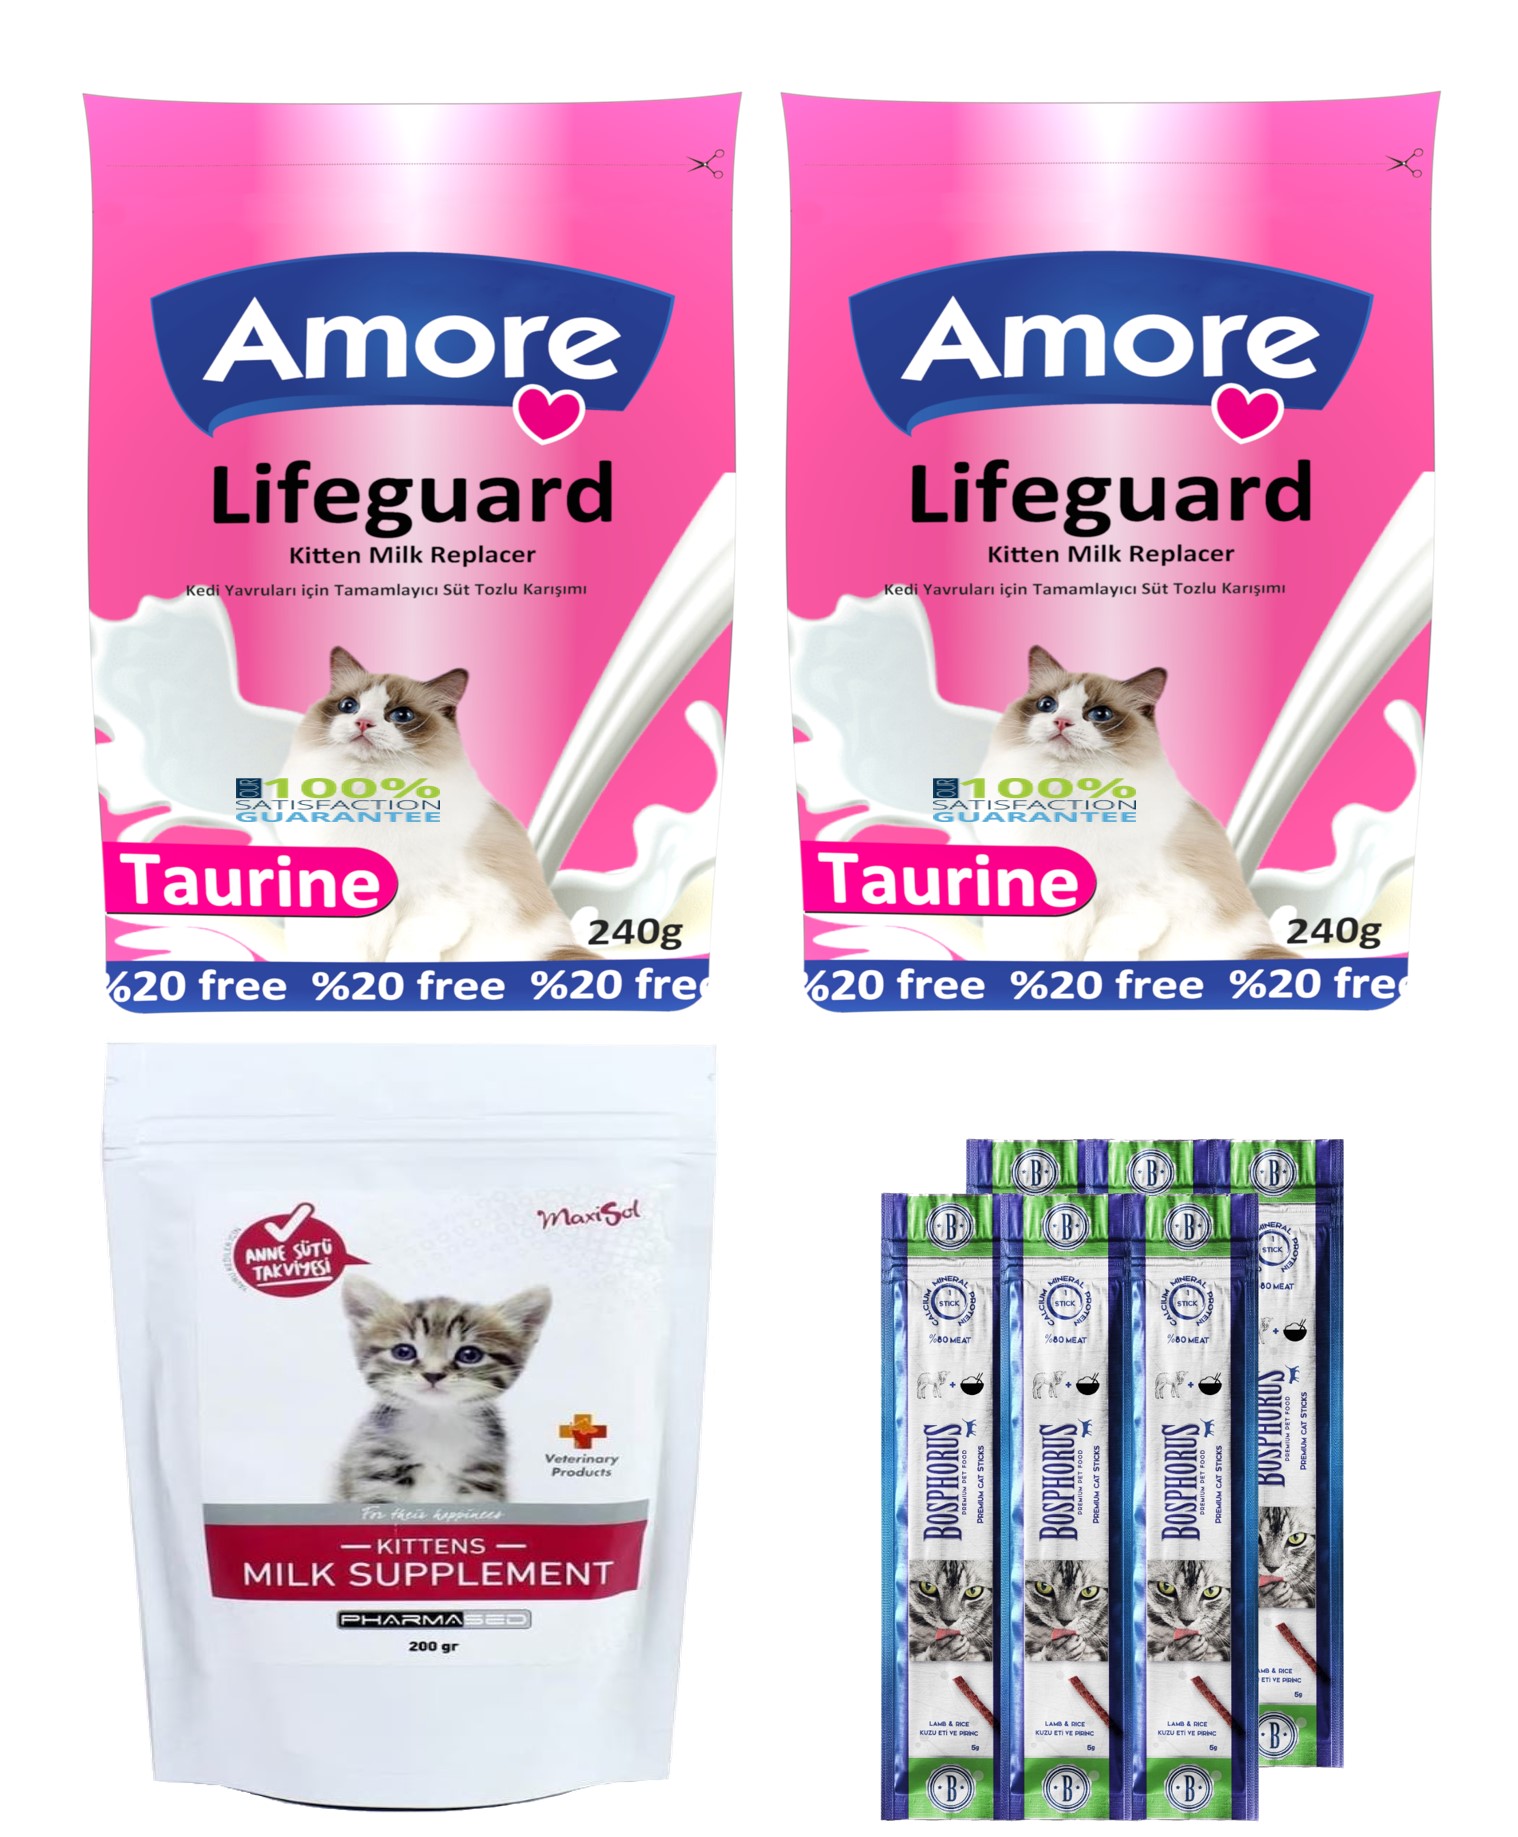 Amore LifeGuard Kedi Süt Tozu 2x240g + Maxisol Kitten Milk Supplement 200g + 2 adet 3lü Sticks